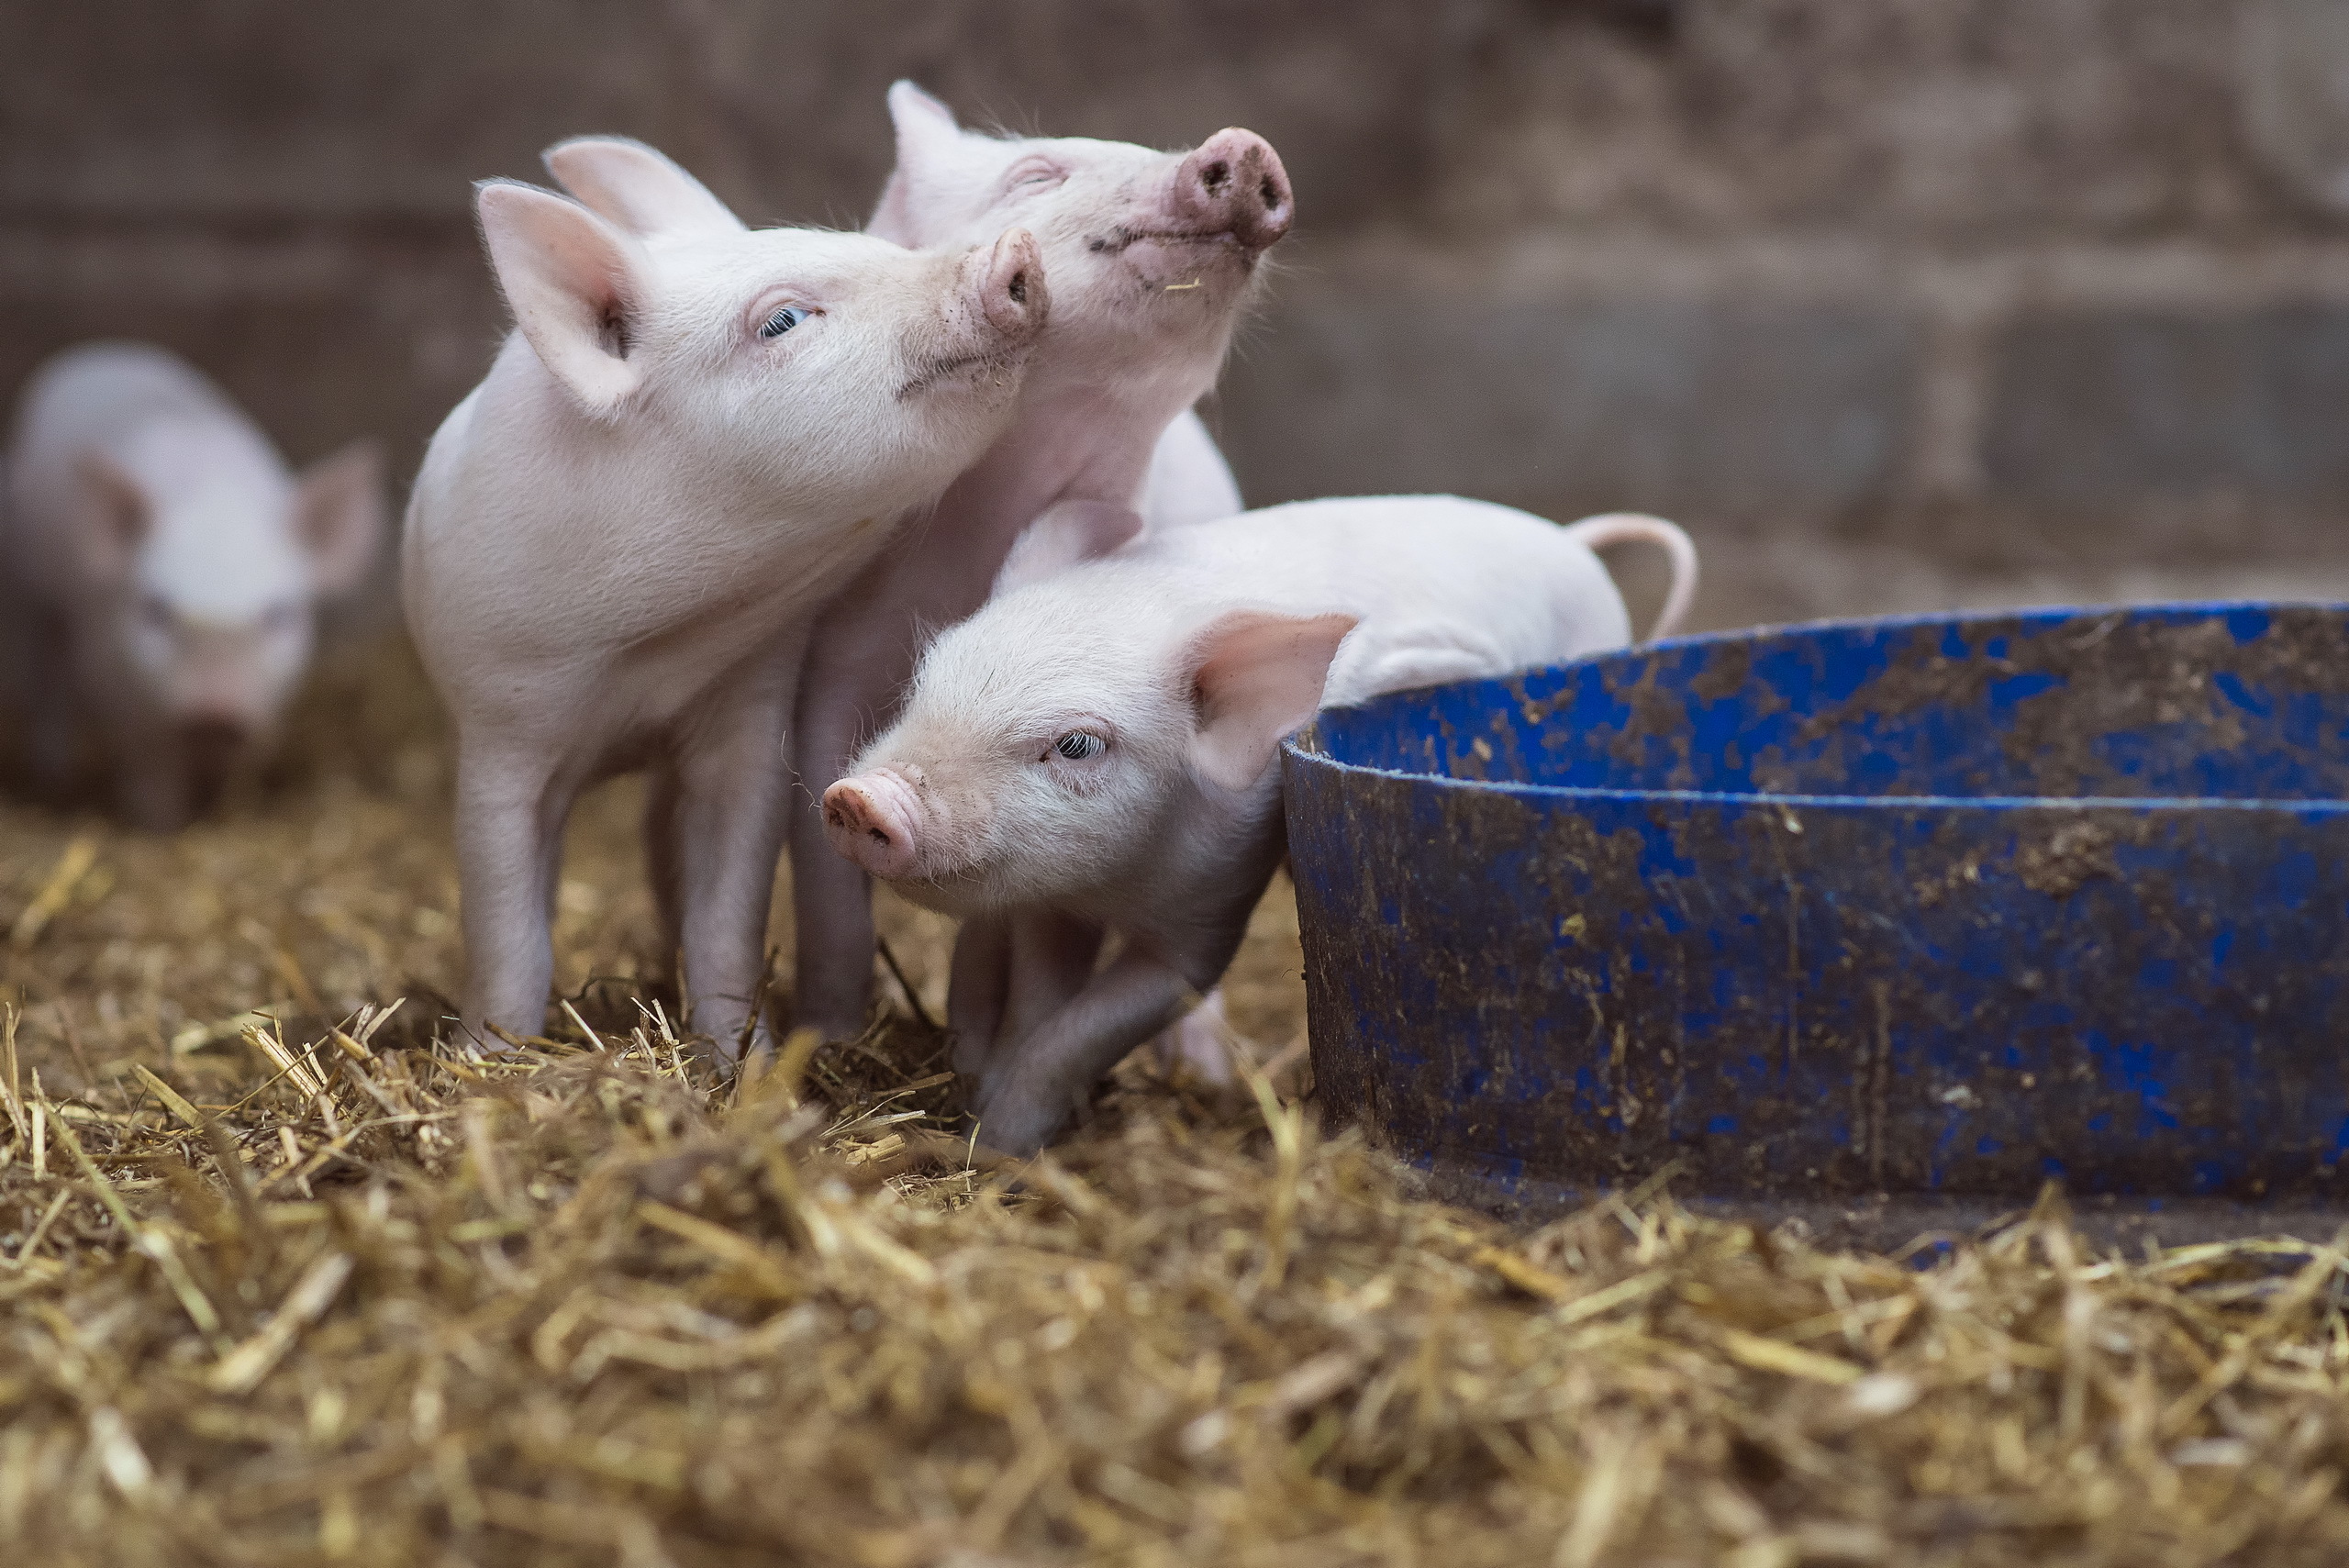 Fondos de Pantalla Cerdos Blancos en Heno Marrón, Imágenes y Fotos Gratis